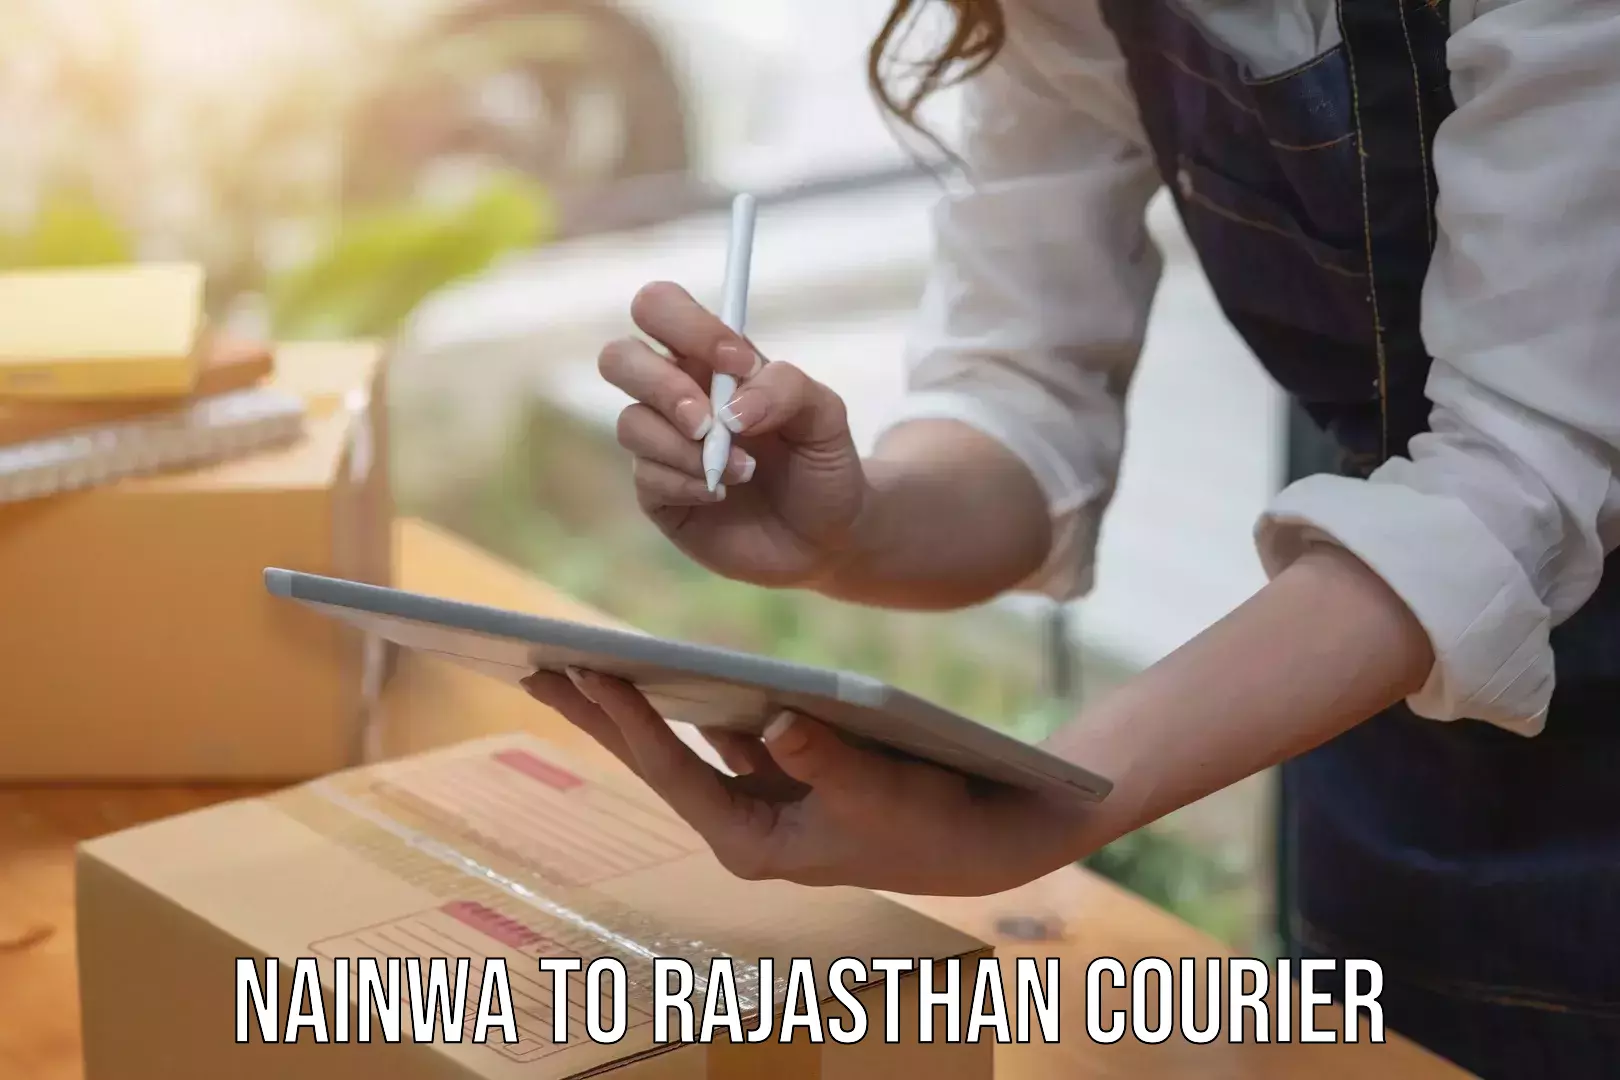 Next-day delivery options Nainwa to Mahwa